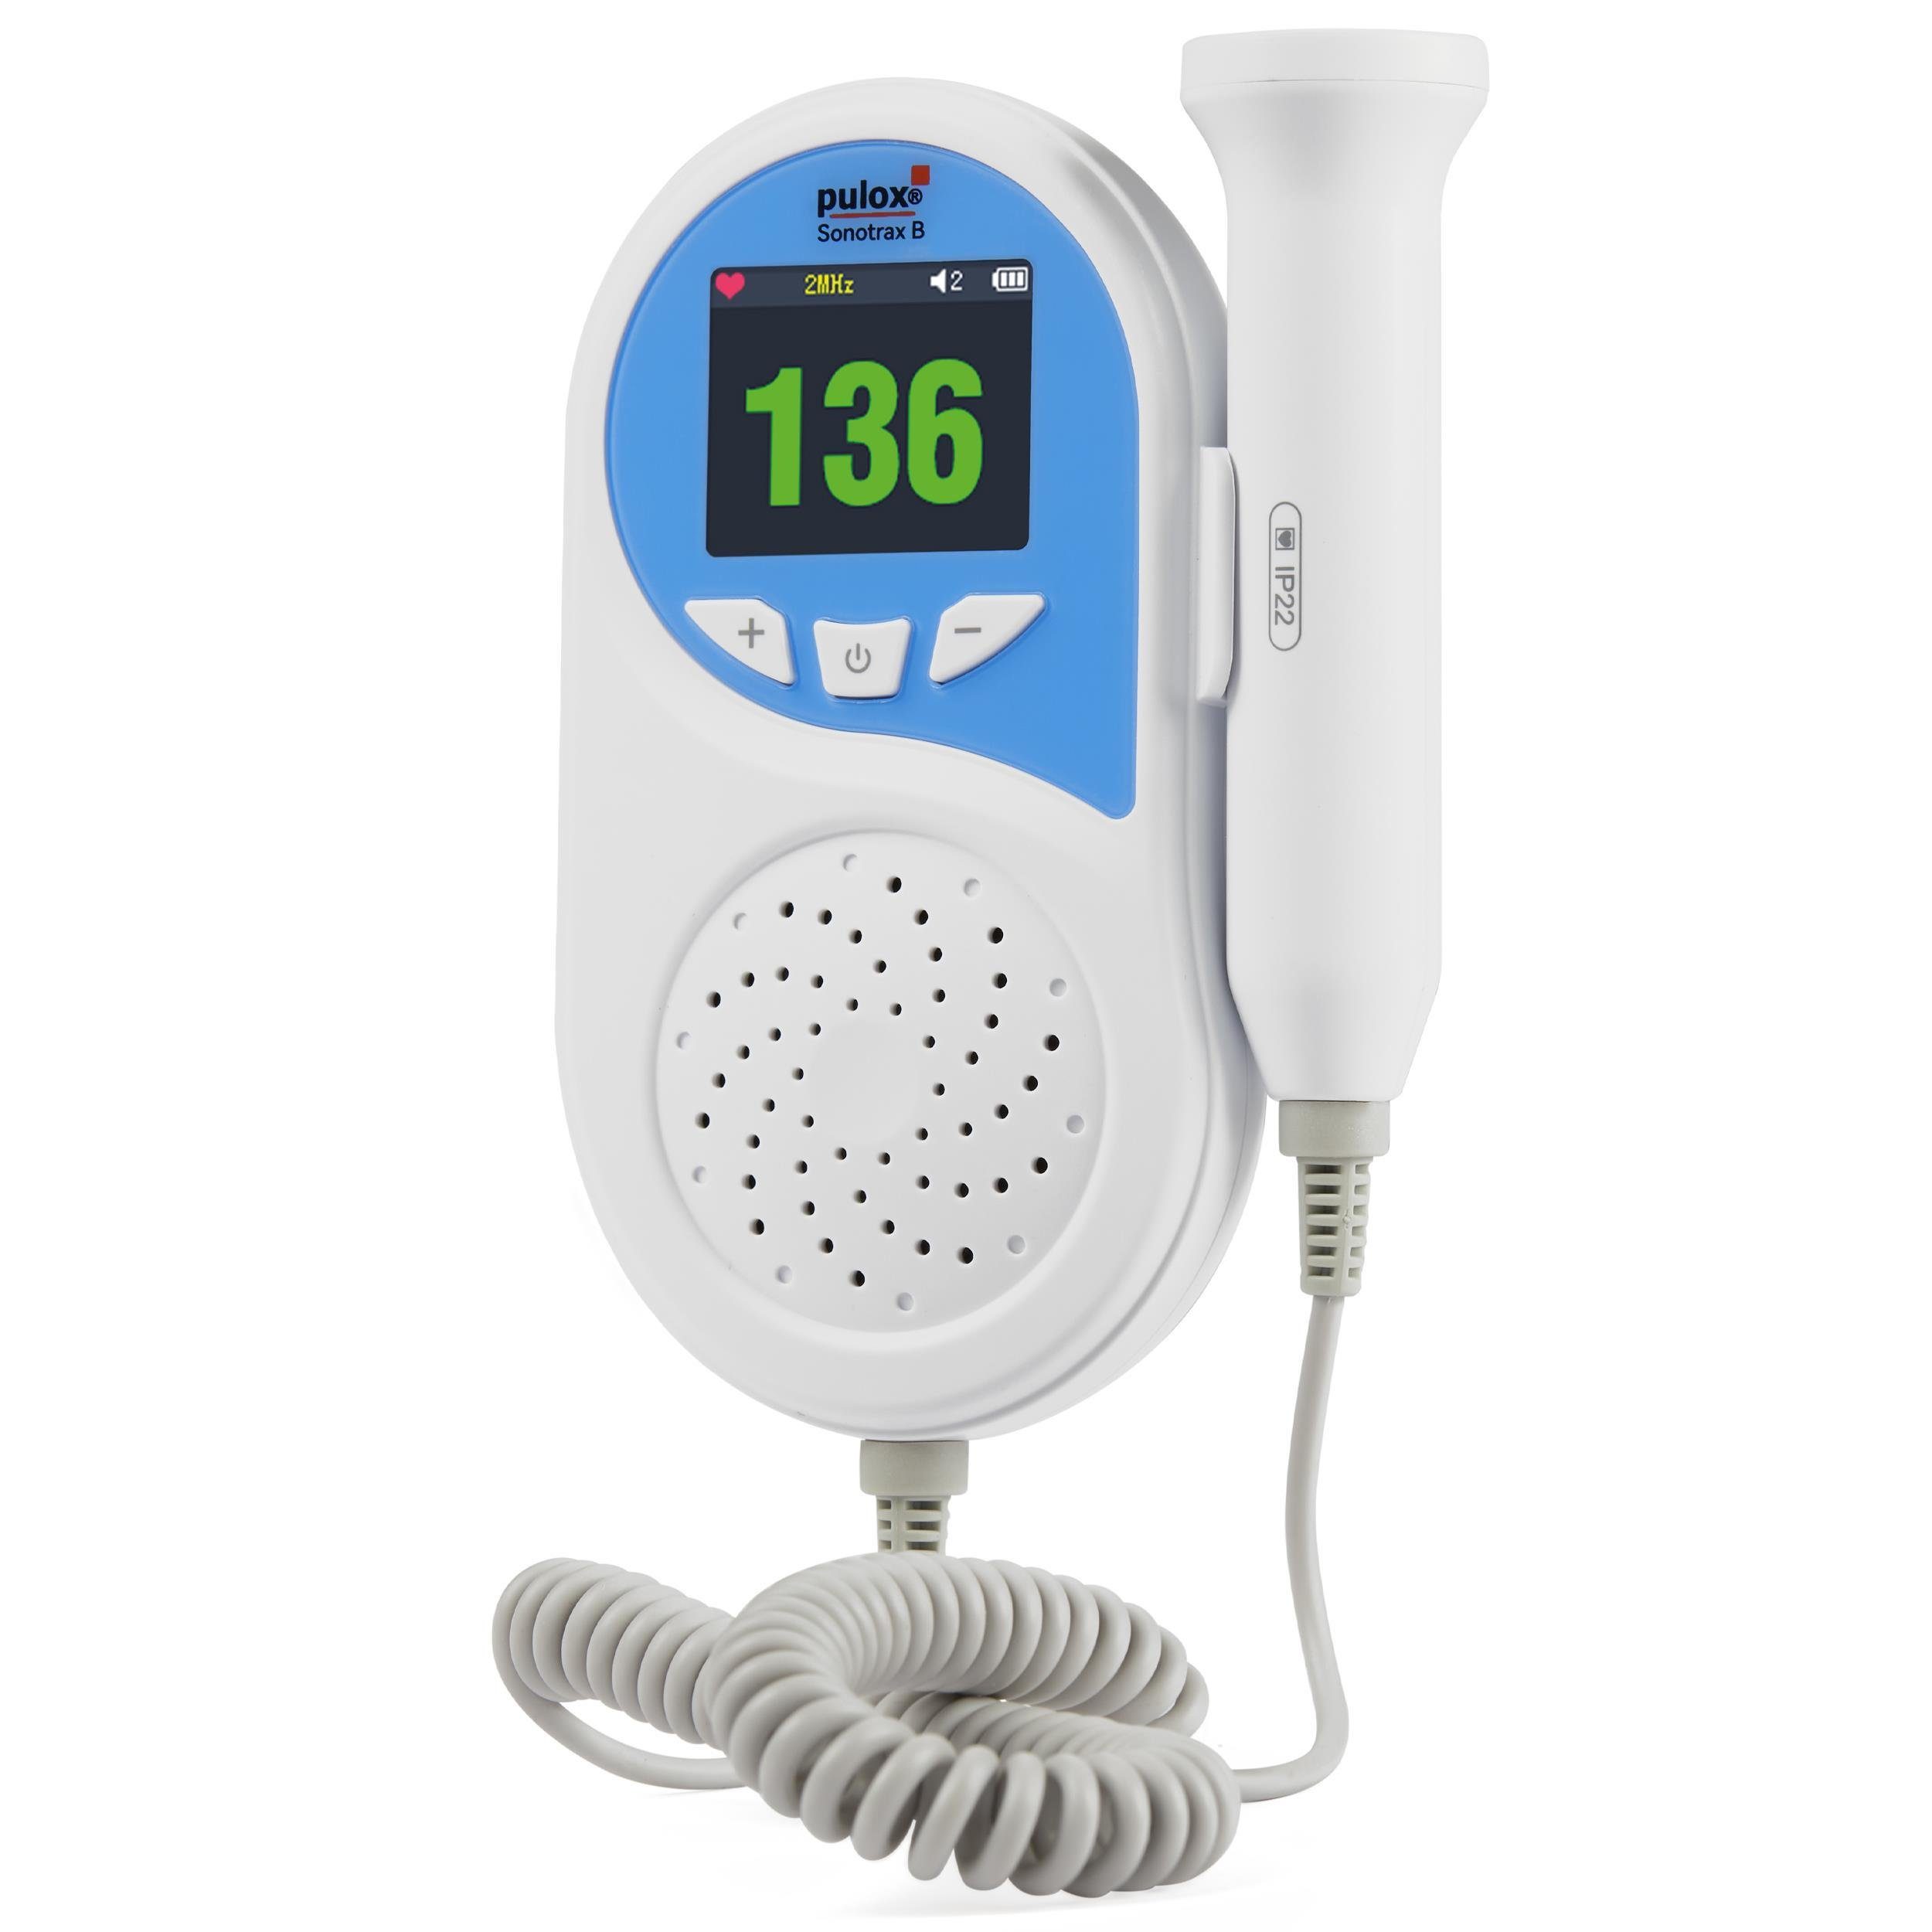 pulox Babyphone Sonotrax B - Ultraschall Fetal-Doppler mit Lautsprecher | Babyphones